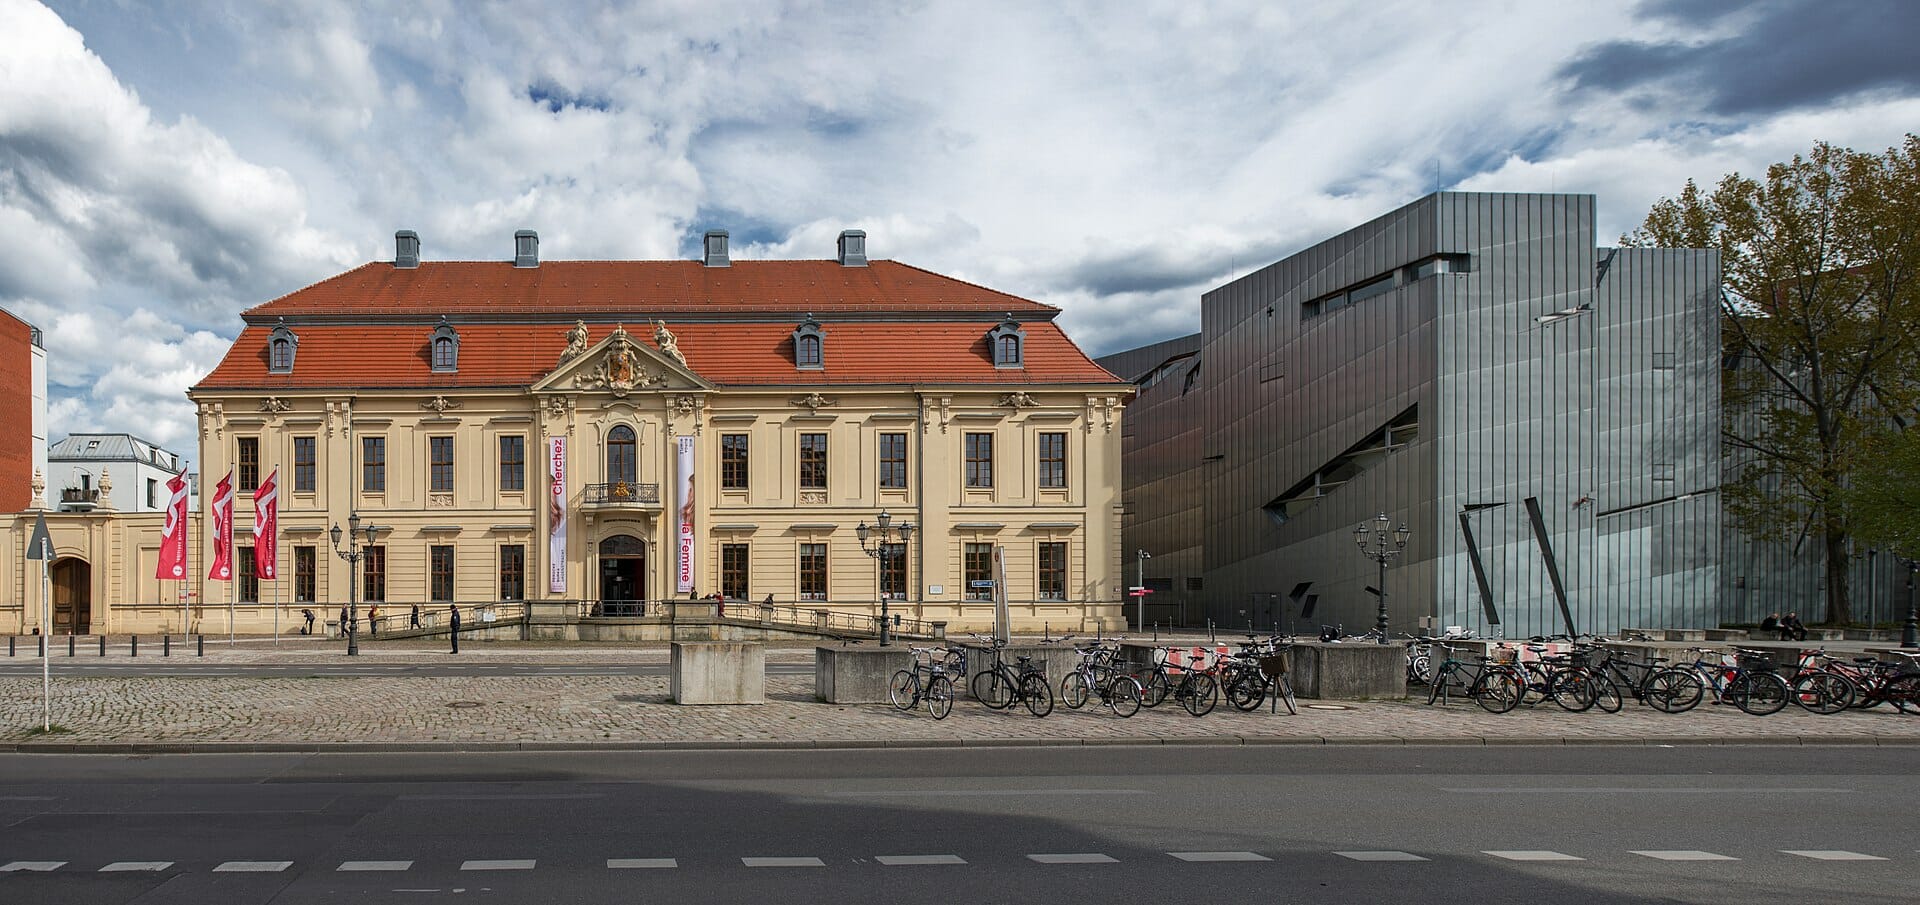 Antisemiten im Jüdischen Museum Berlin: Deutsche Bundesregierung hat keine Einwände